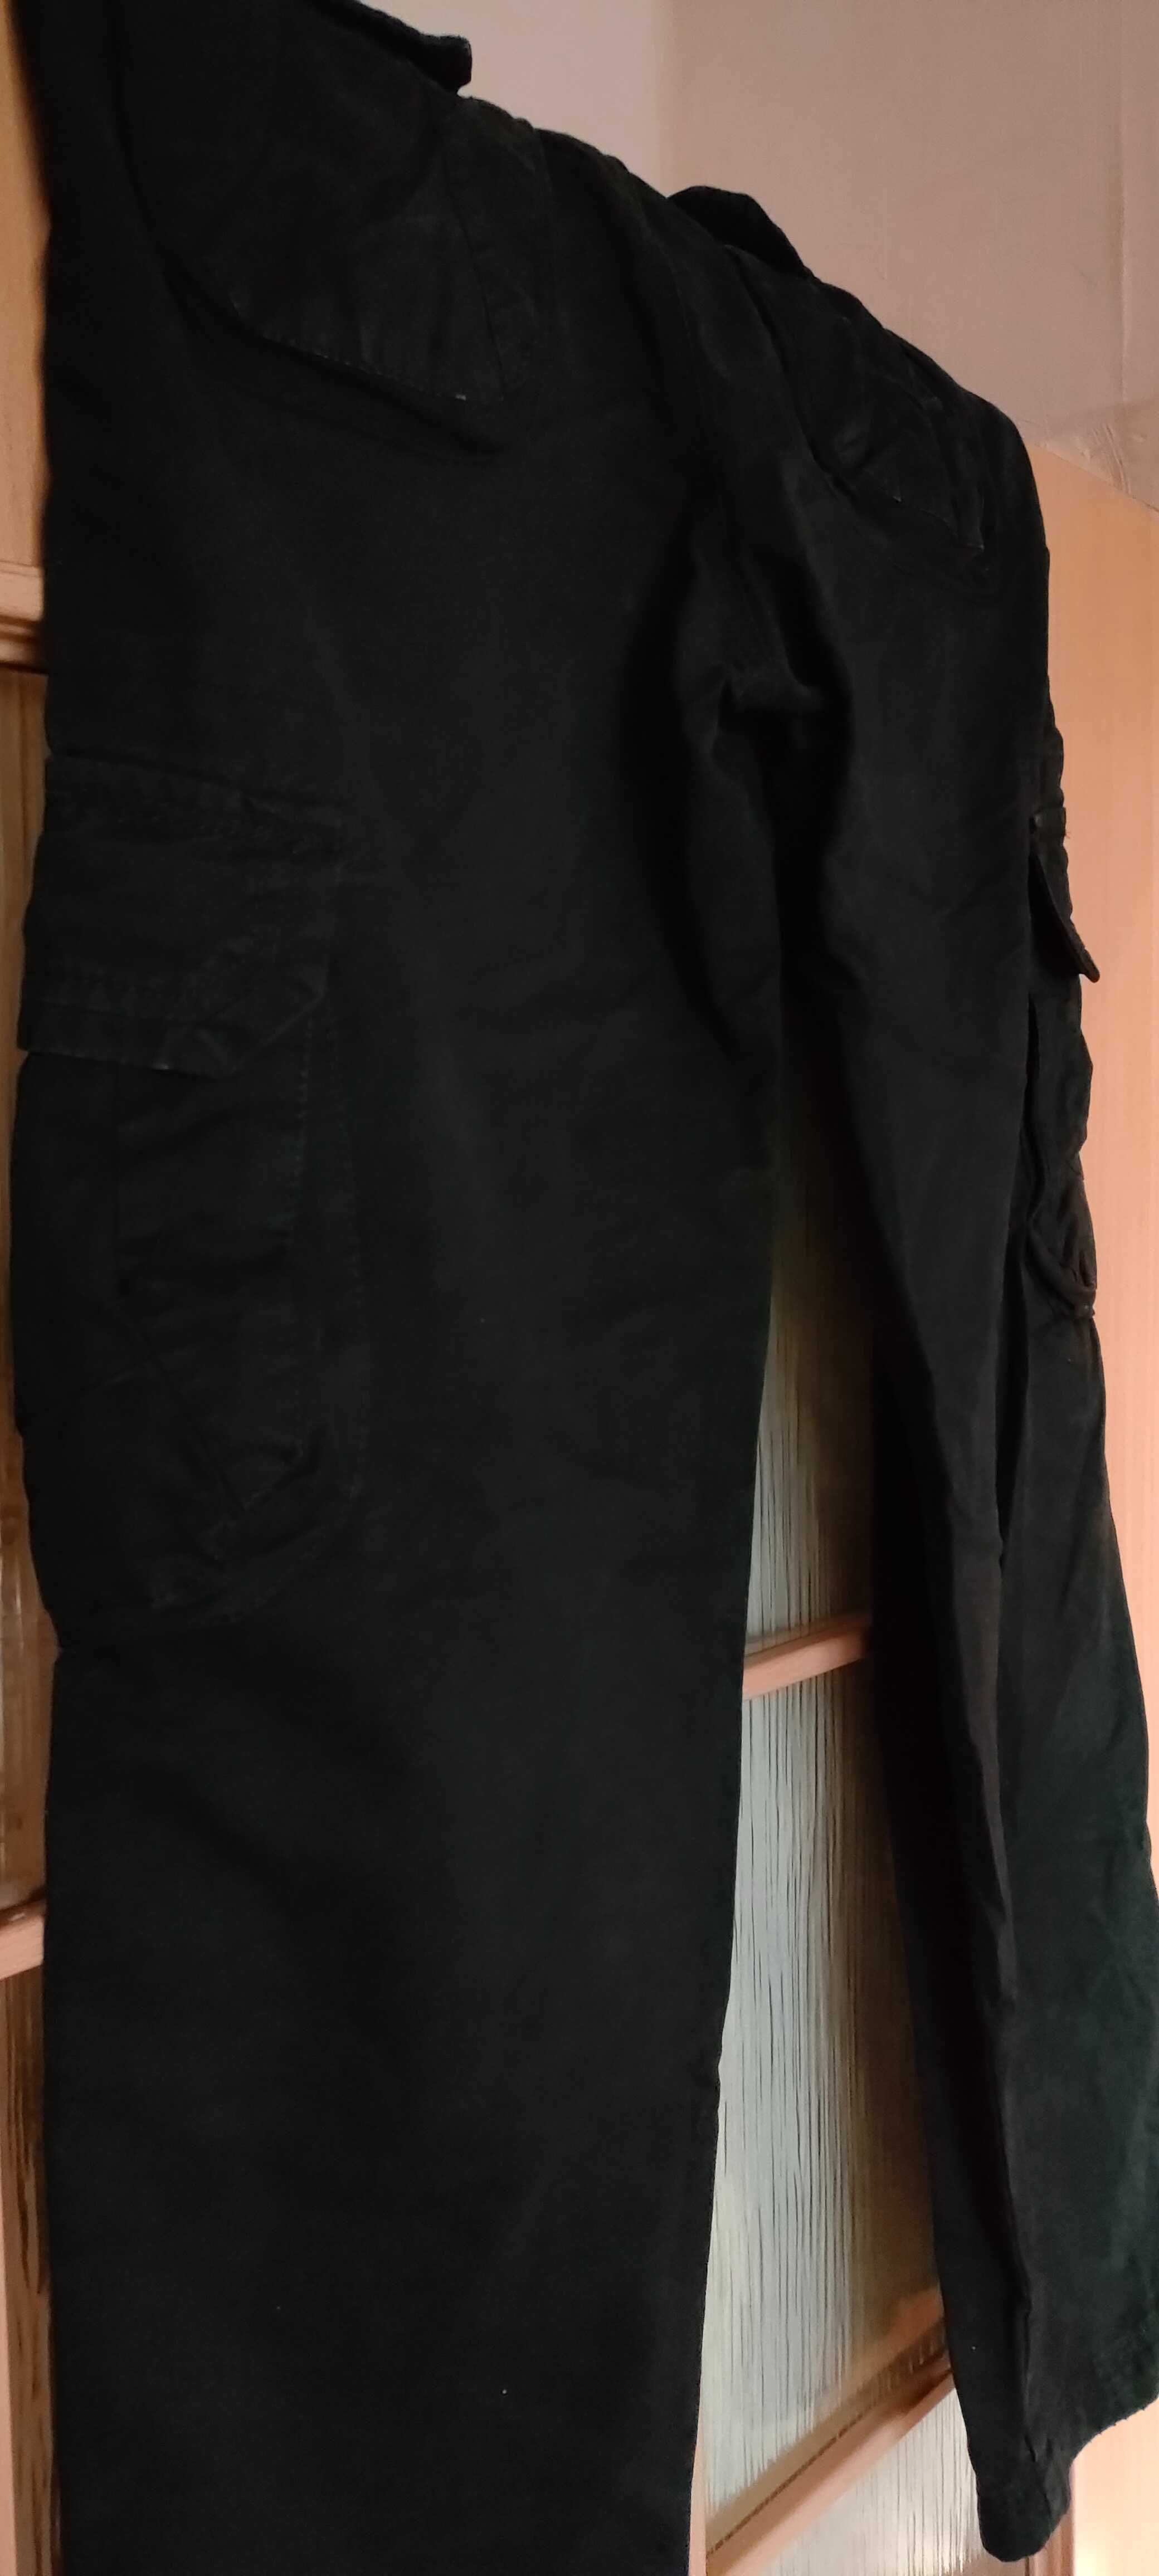 Spodnie bojówki czarne w bdb stanie kolor czarny rozmiar 32 84 cm pas